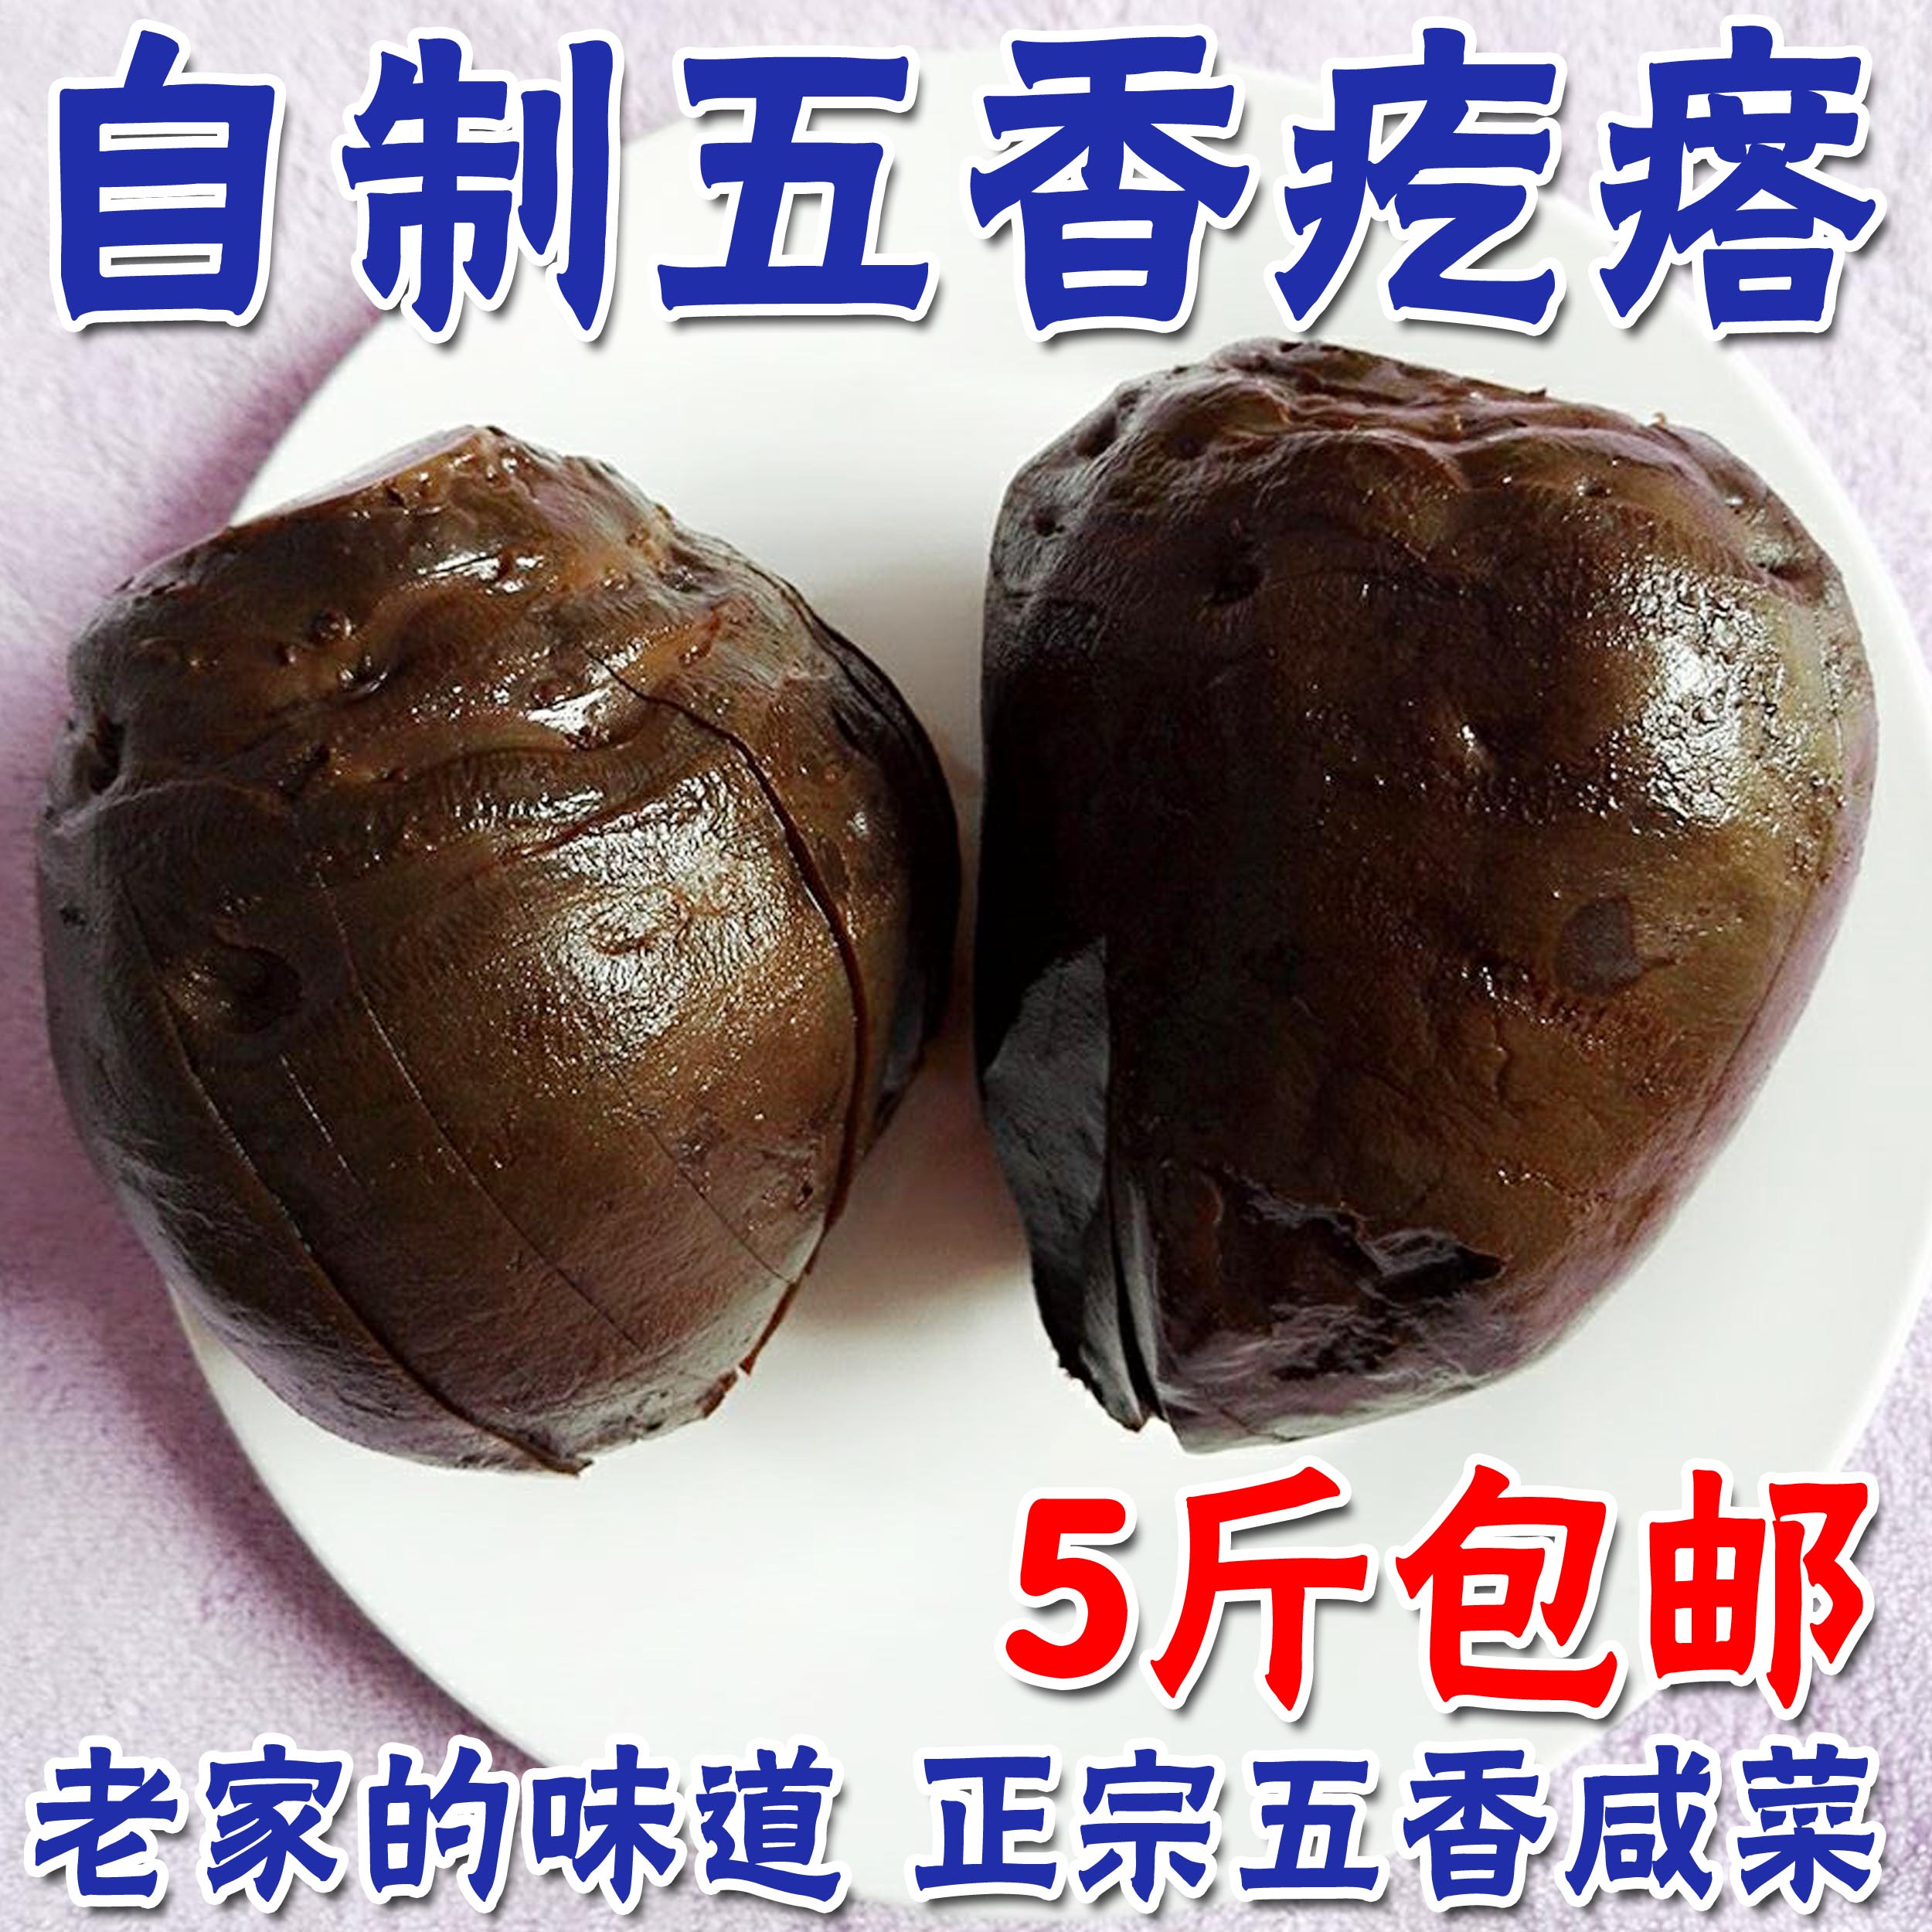 大头菜系列 _ 产品展示 _ 四川宜宾戎陈坊食品有限公司